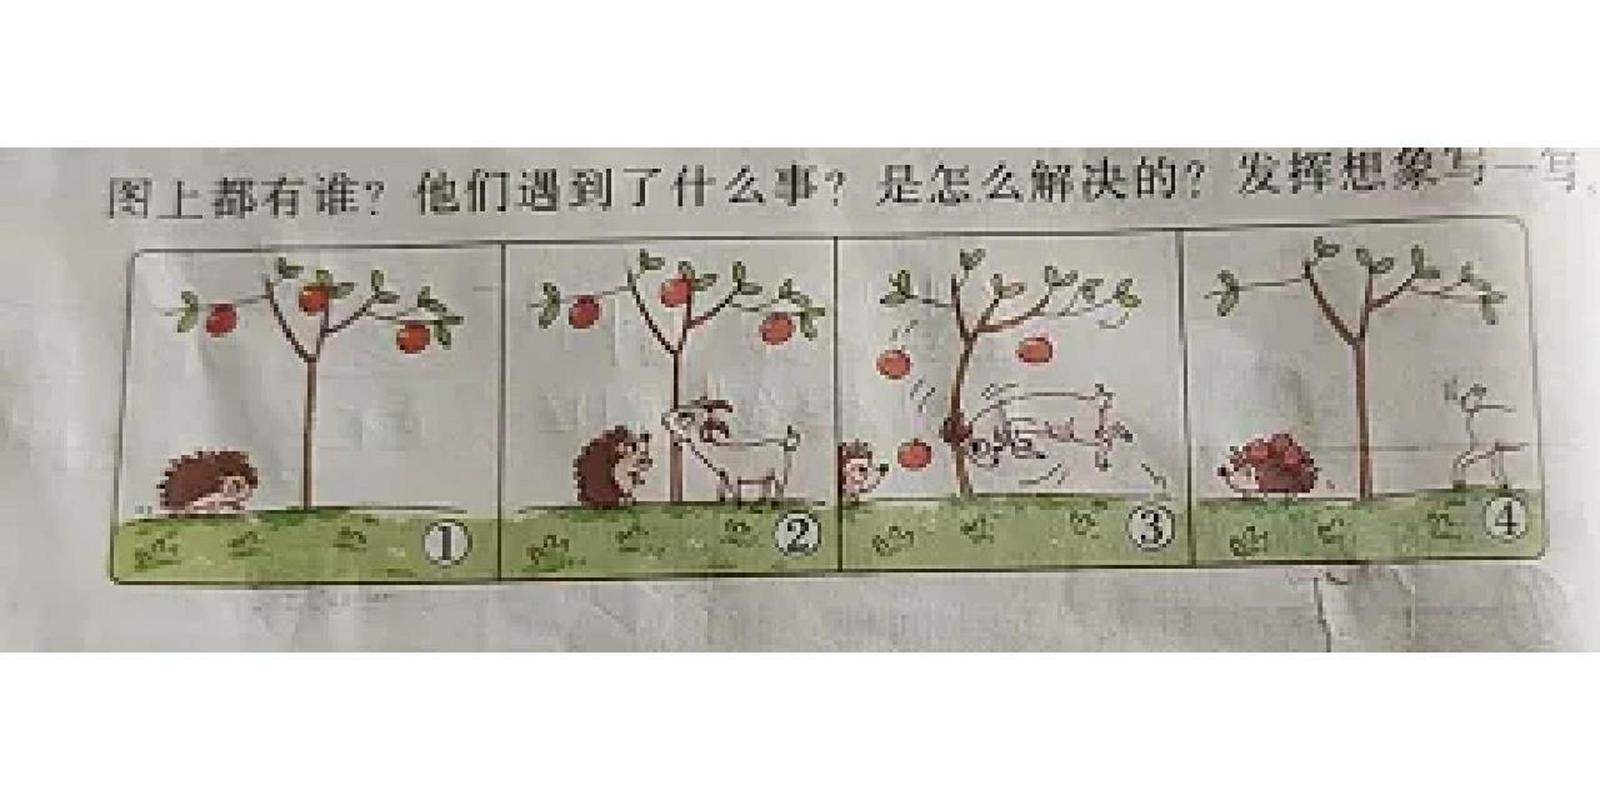 二年级看图写话《小刺猬摘苹果》  有一天,小刺猬到森林里摘苹果.